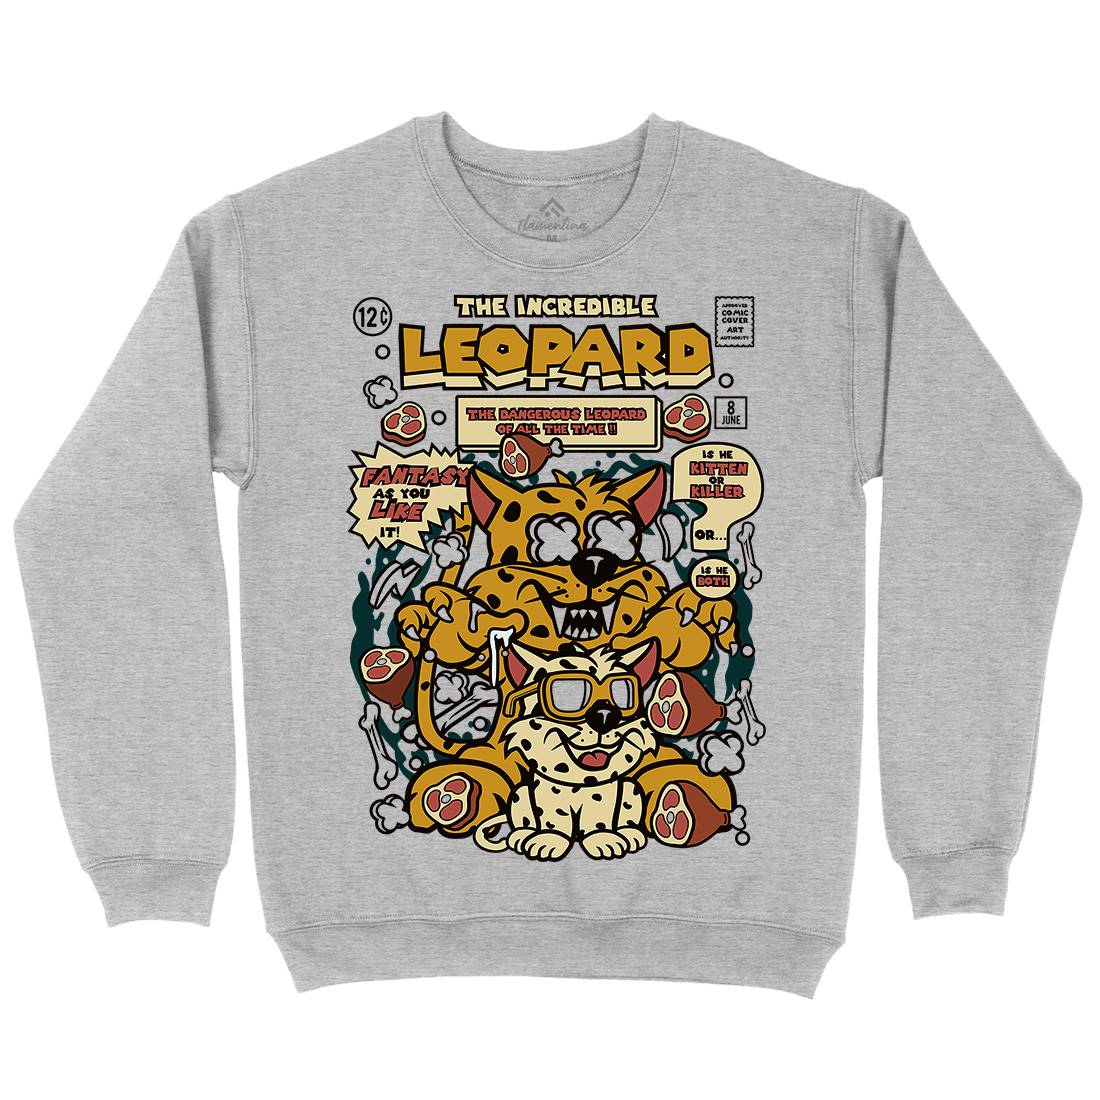 The Incredible Leopard Kids Crew Neck Sweatshirt Animals C677